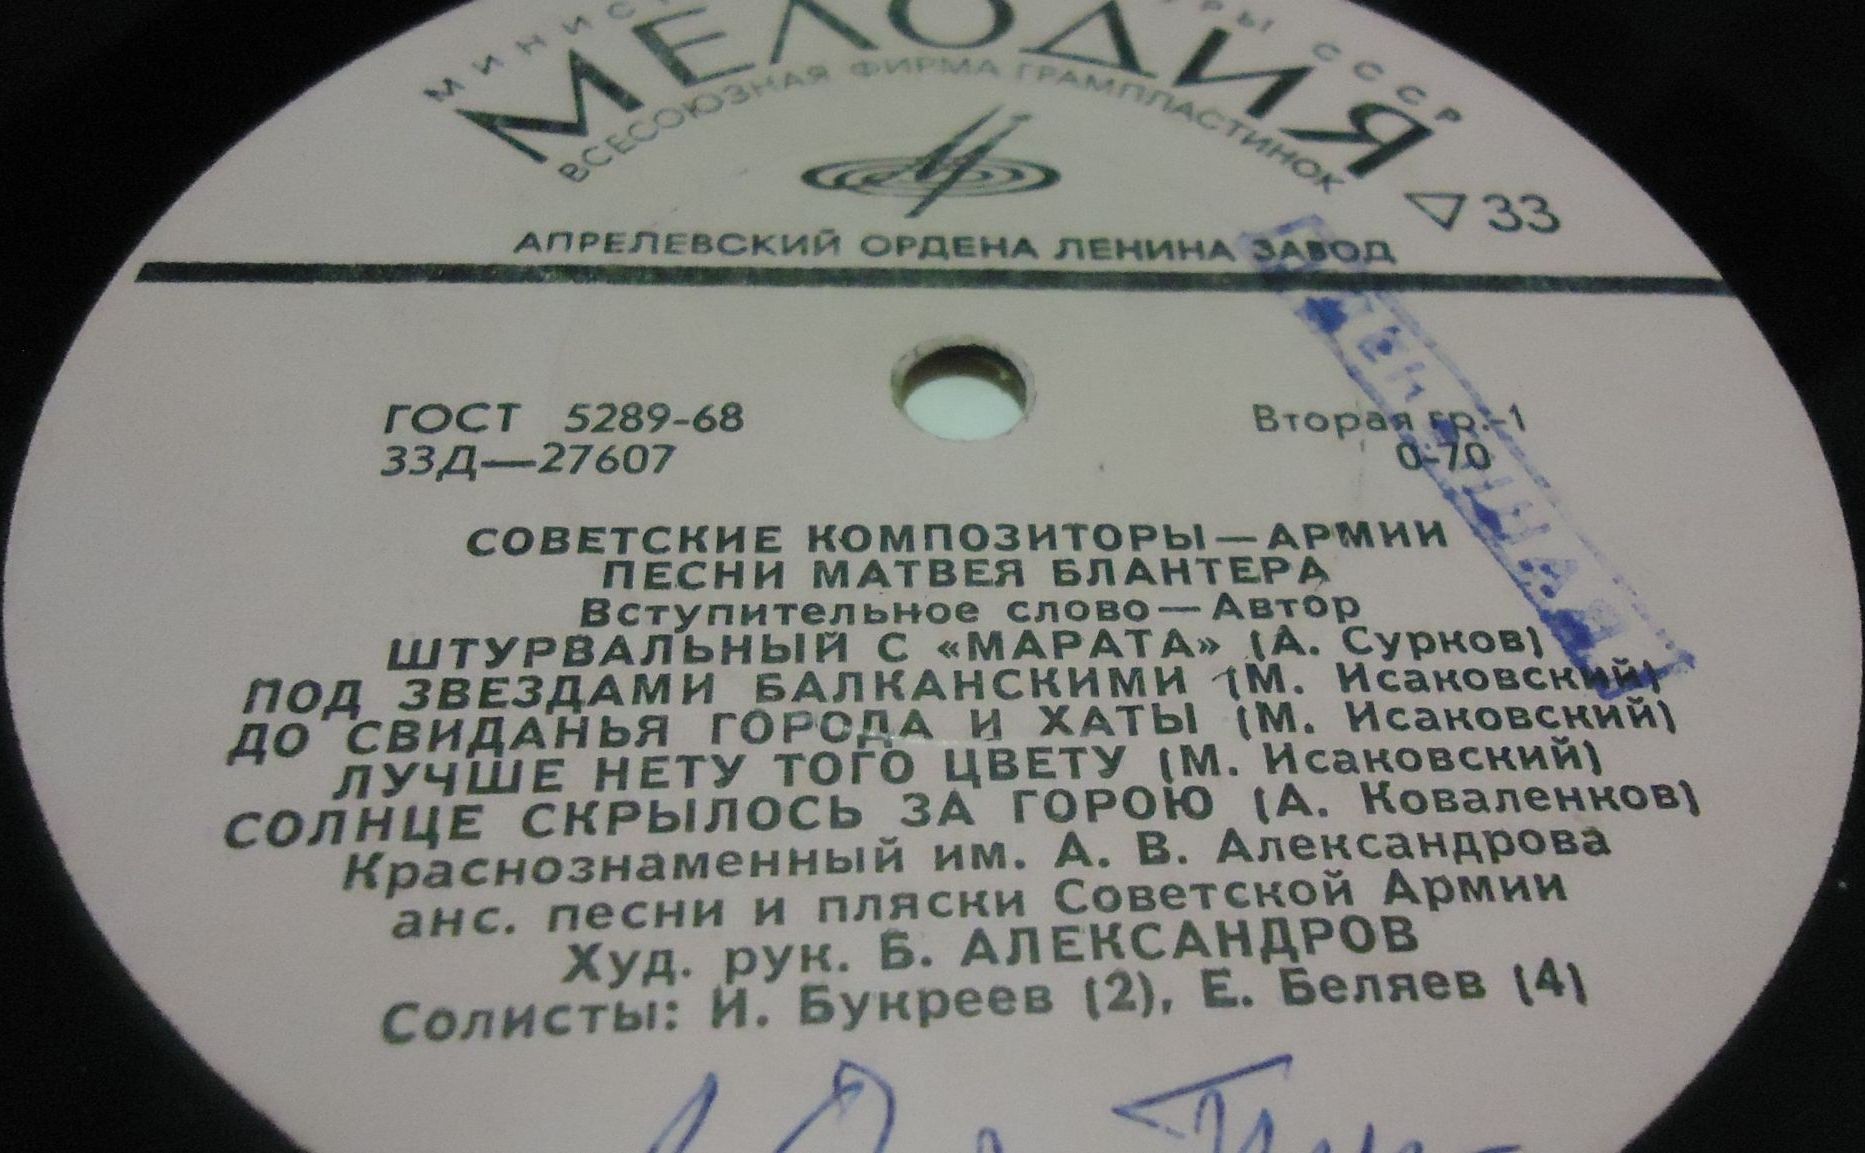 Песни М.И. БЛАНТЕРА (1903). Из цикла "Советские композиторы — Армии"